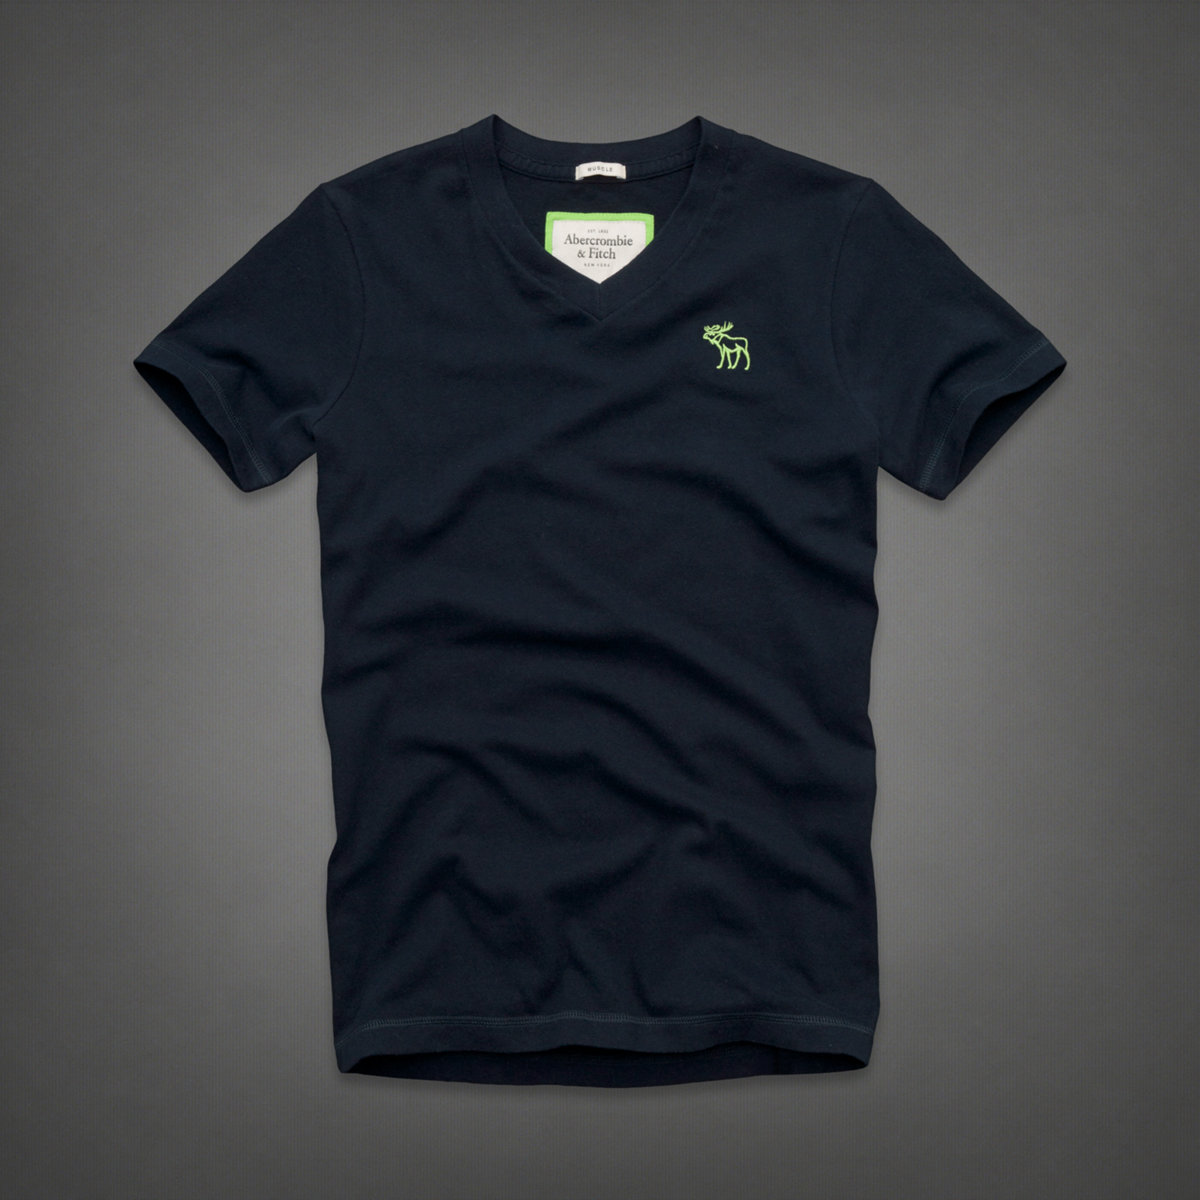 美國百分百【全新真品】Abercrombie & Fitch T恤 AF 短袖 上衣 T-shirt 麋鹿 深藍 V領 Logo 純棉 男 S號